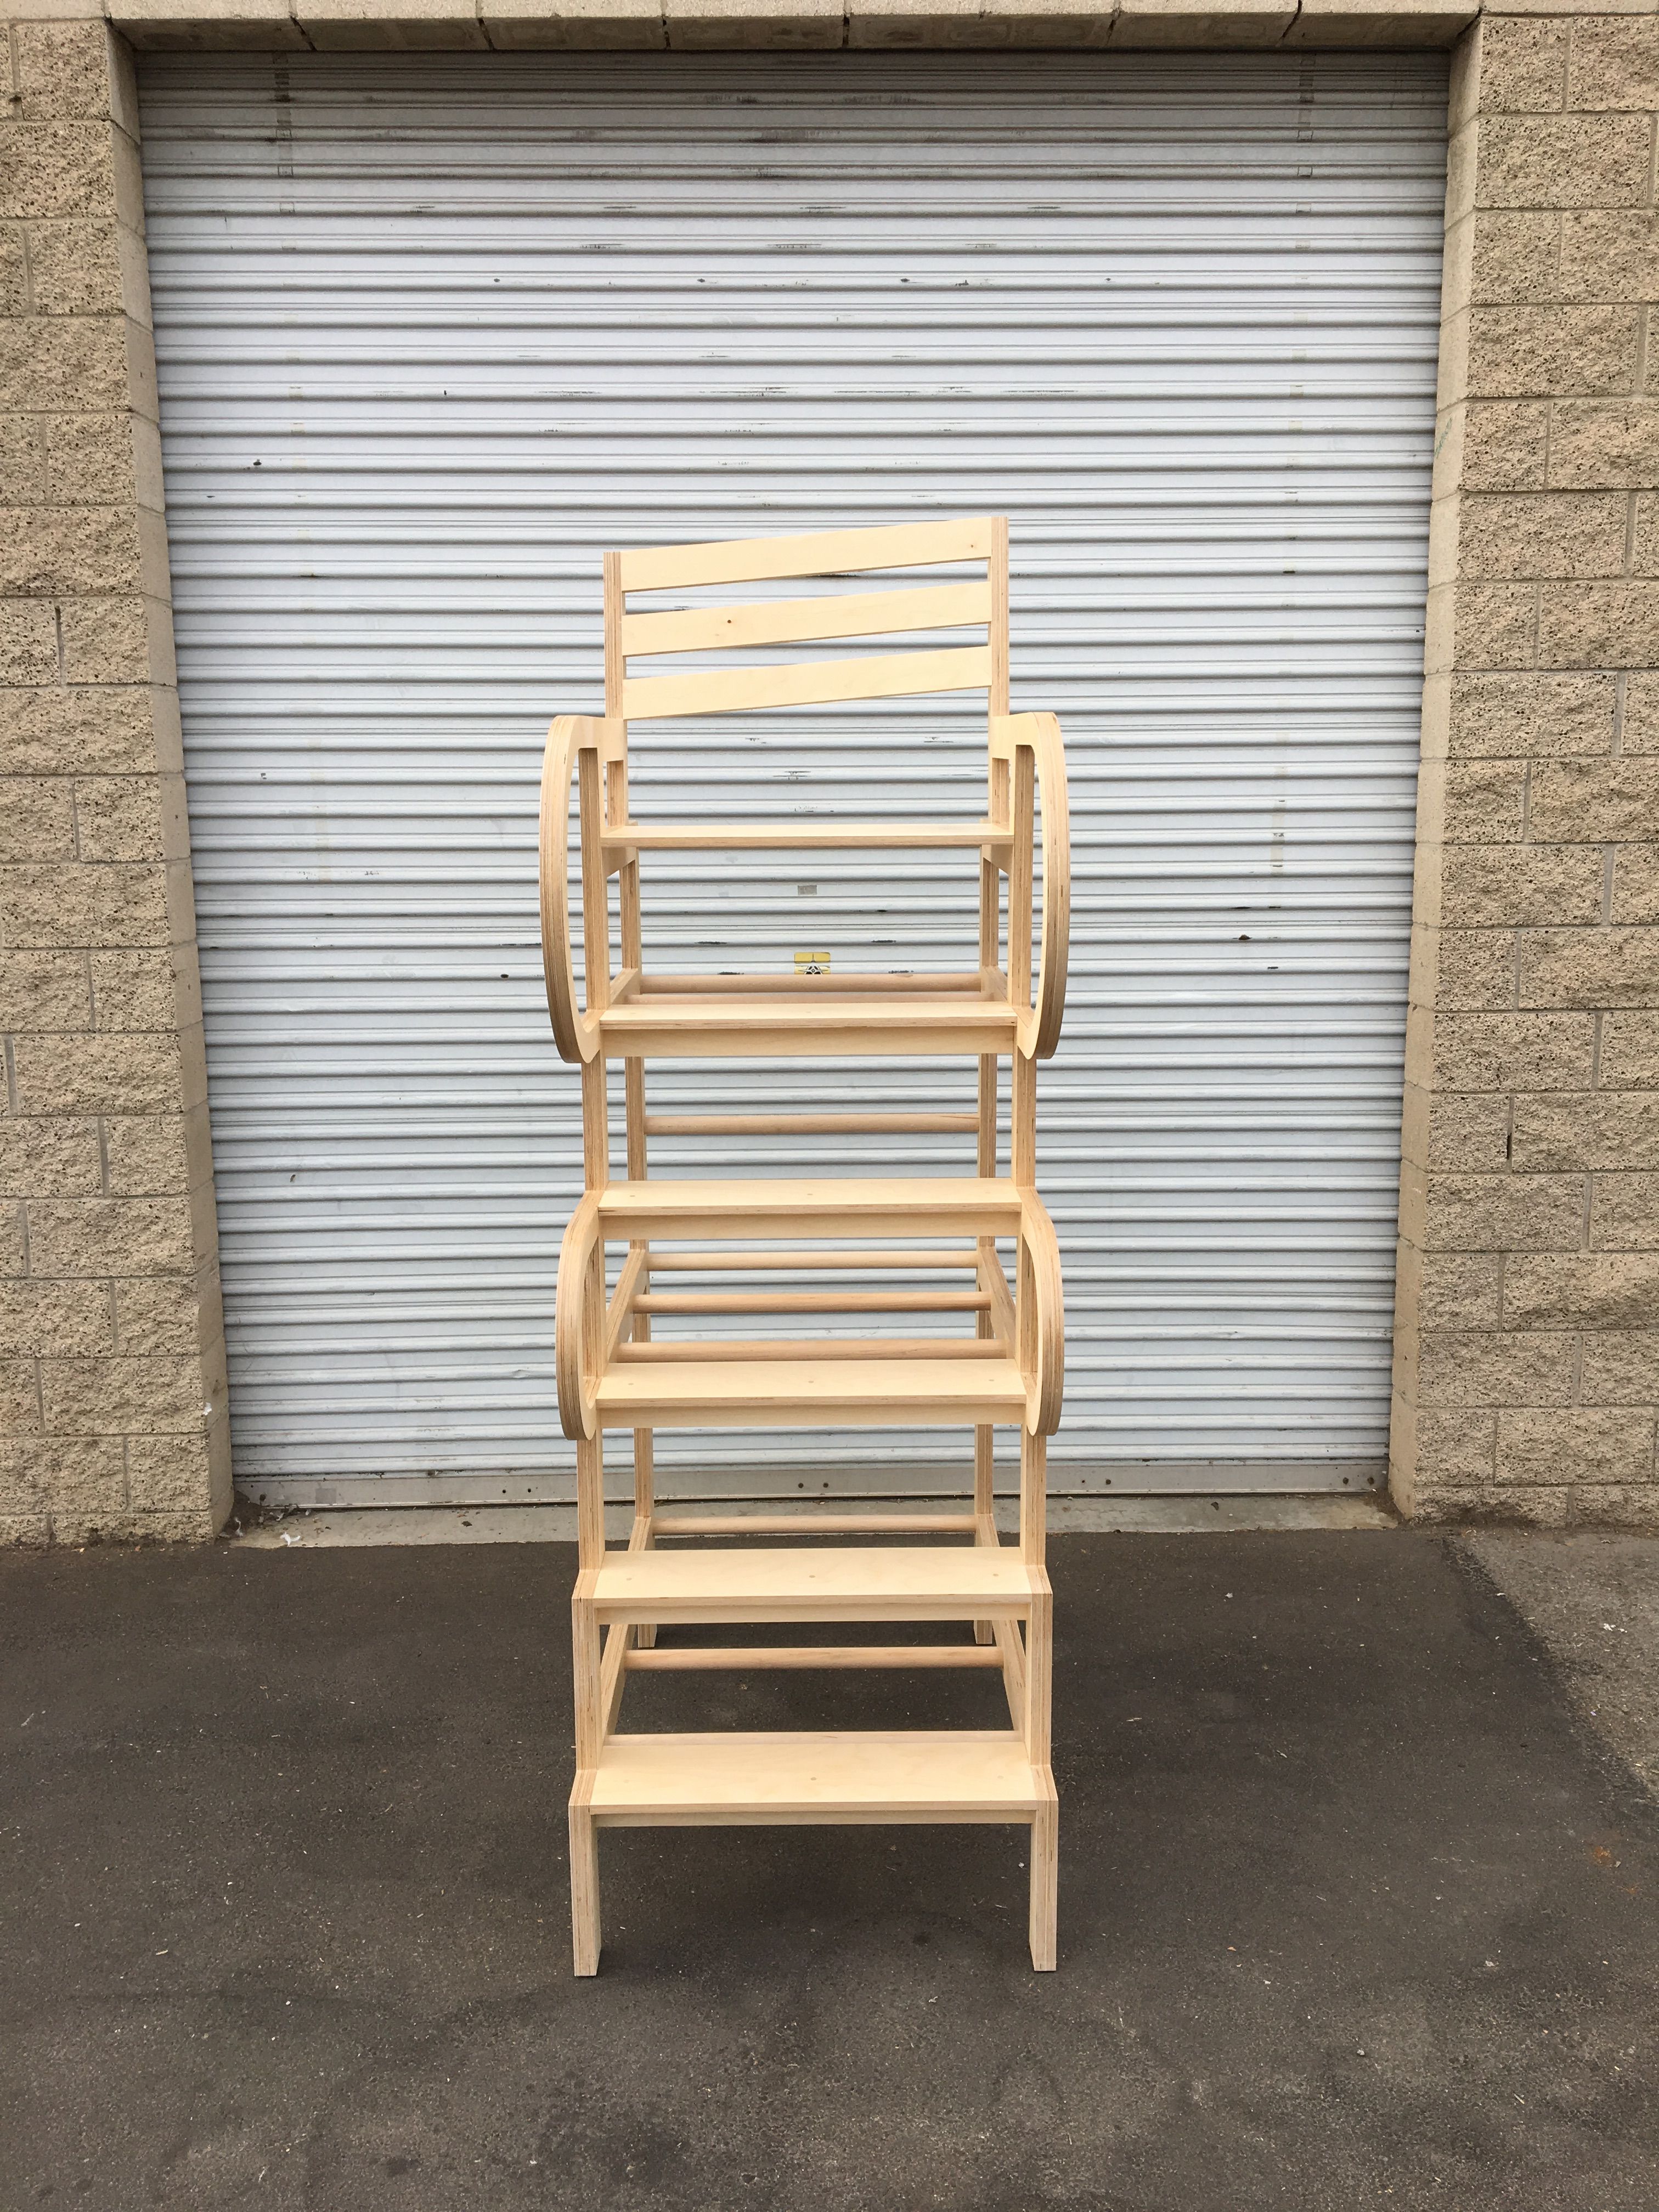  Climbable Chair - Owl Bureau x Adidas / Abbott Kinney Festival product image 8